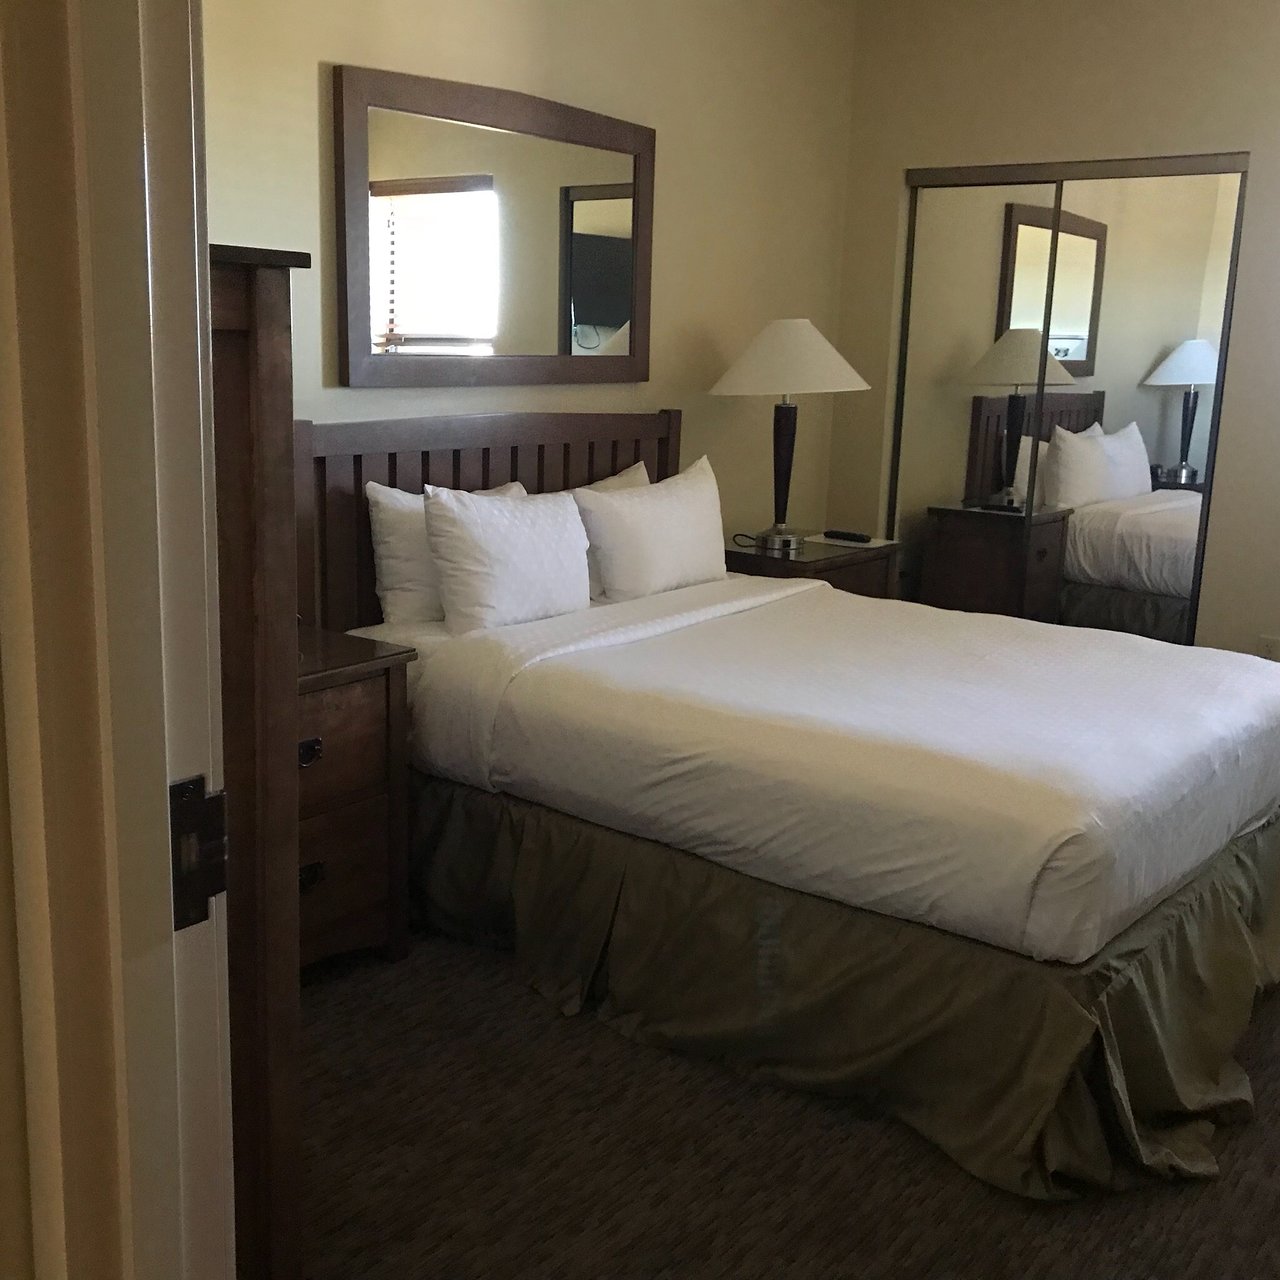 Cancun Resort at Las Vegas Bedroom